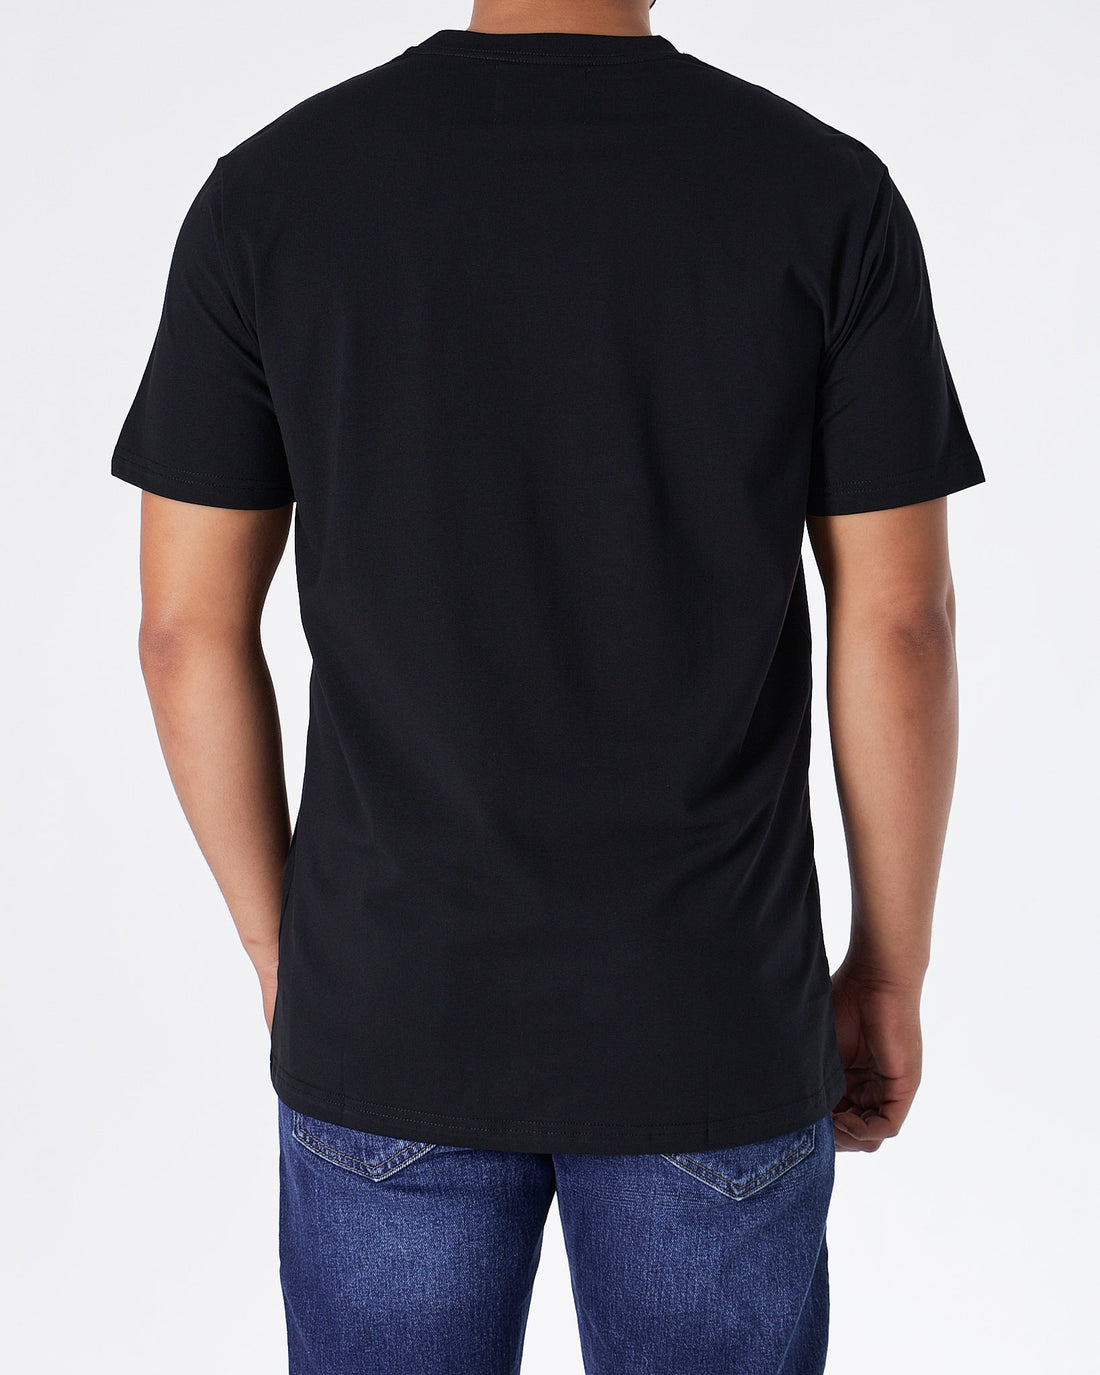 MOI OUTFIT-ABA Plain Color Men Black T-Shirt 14.90